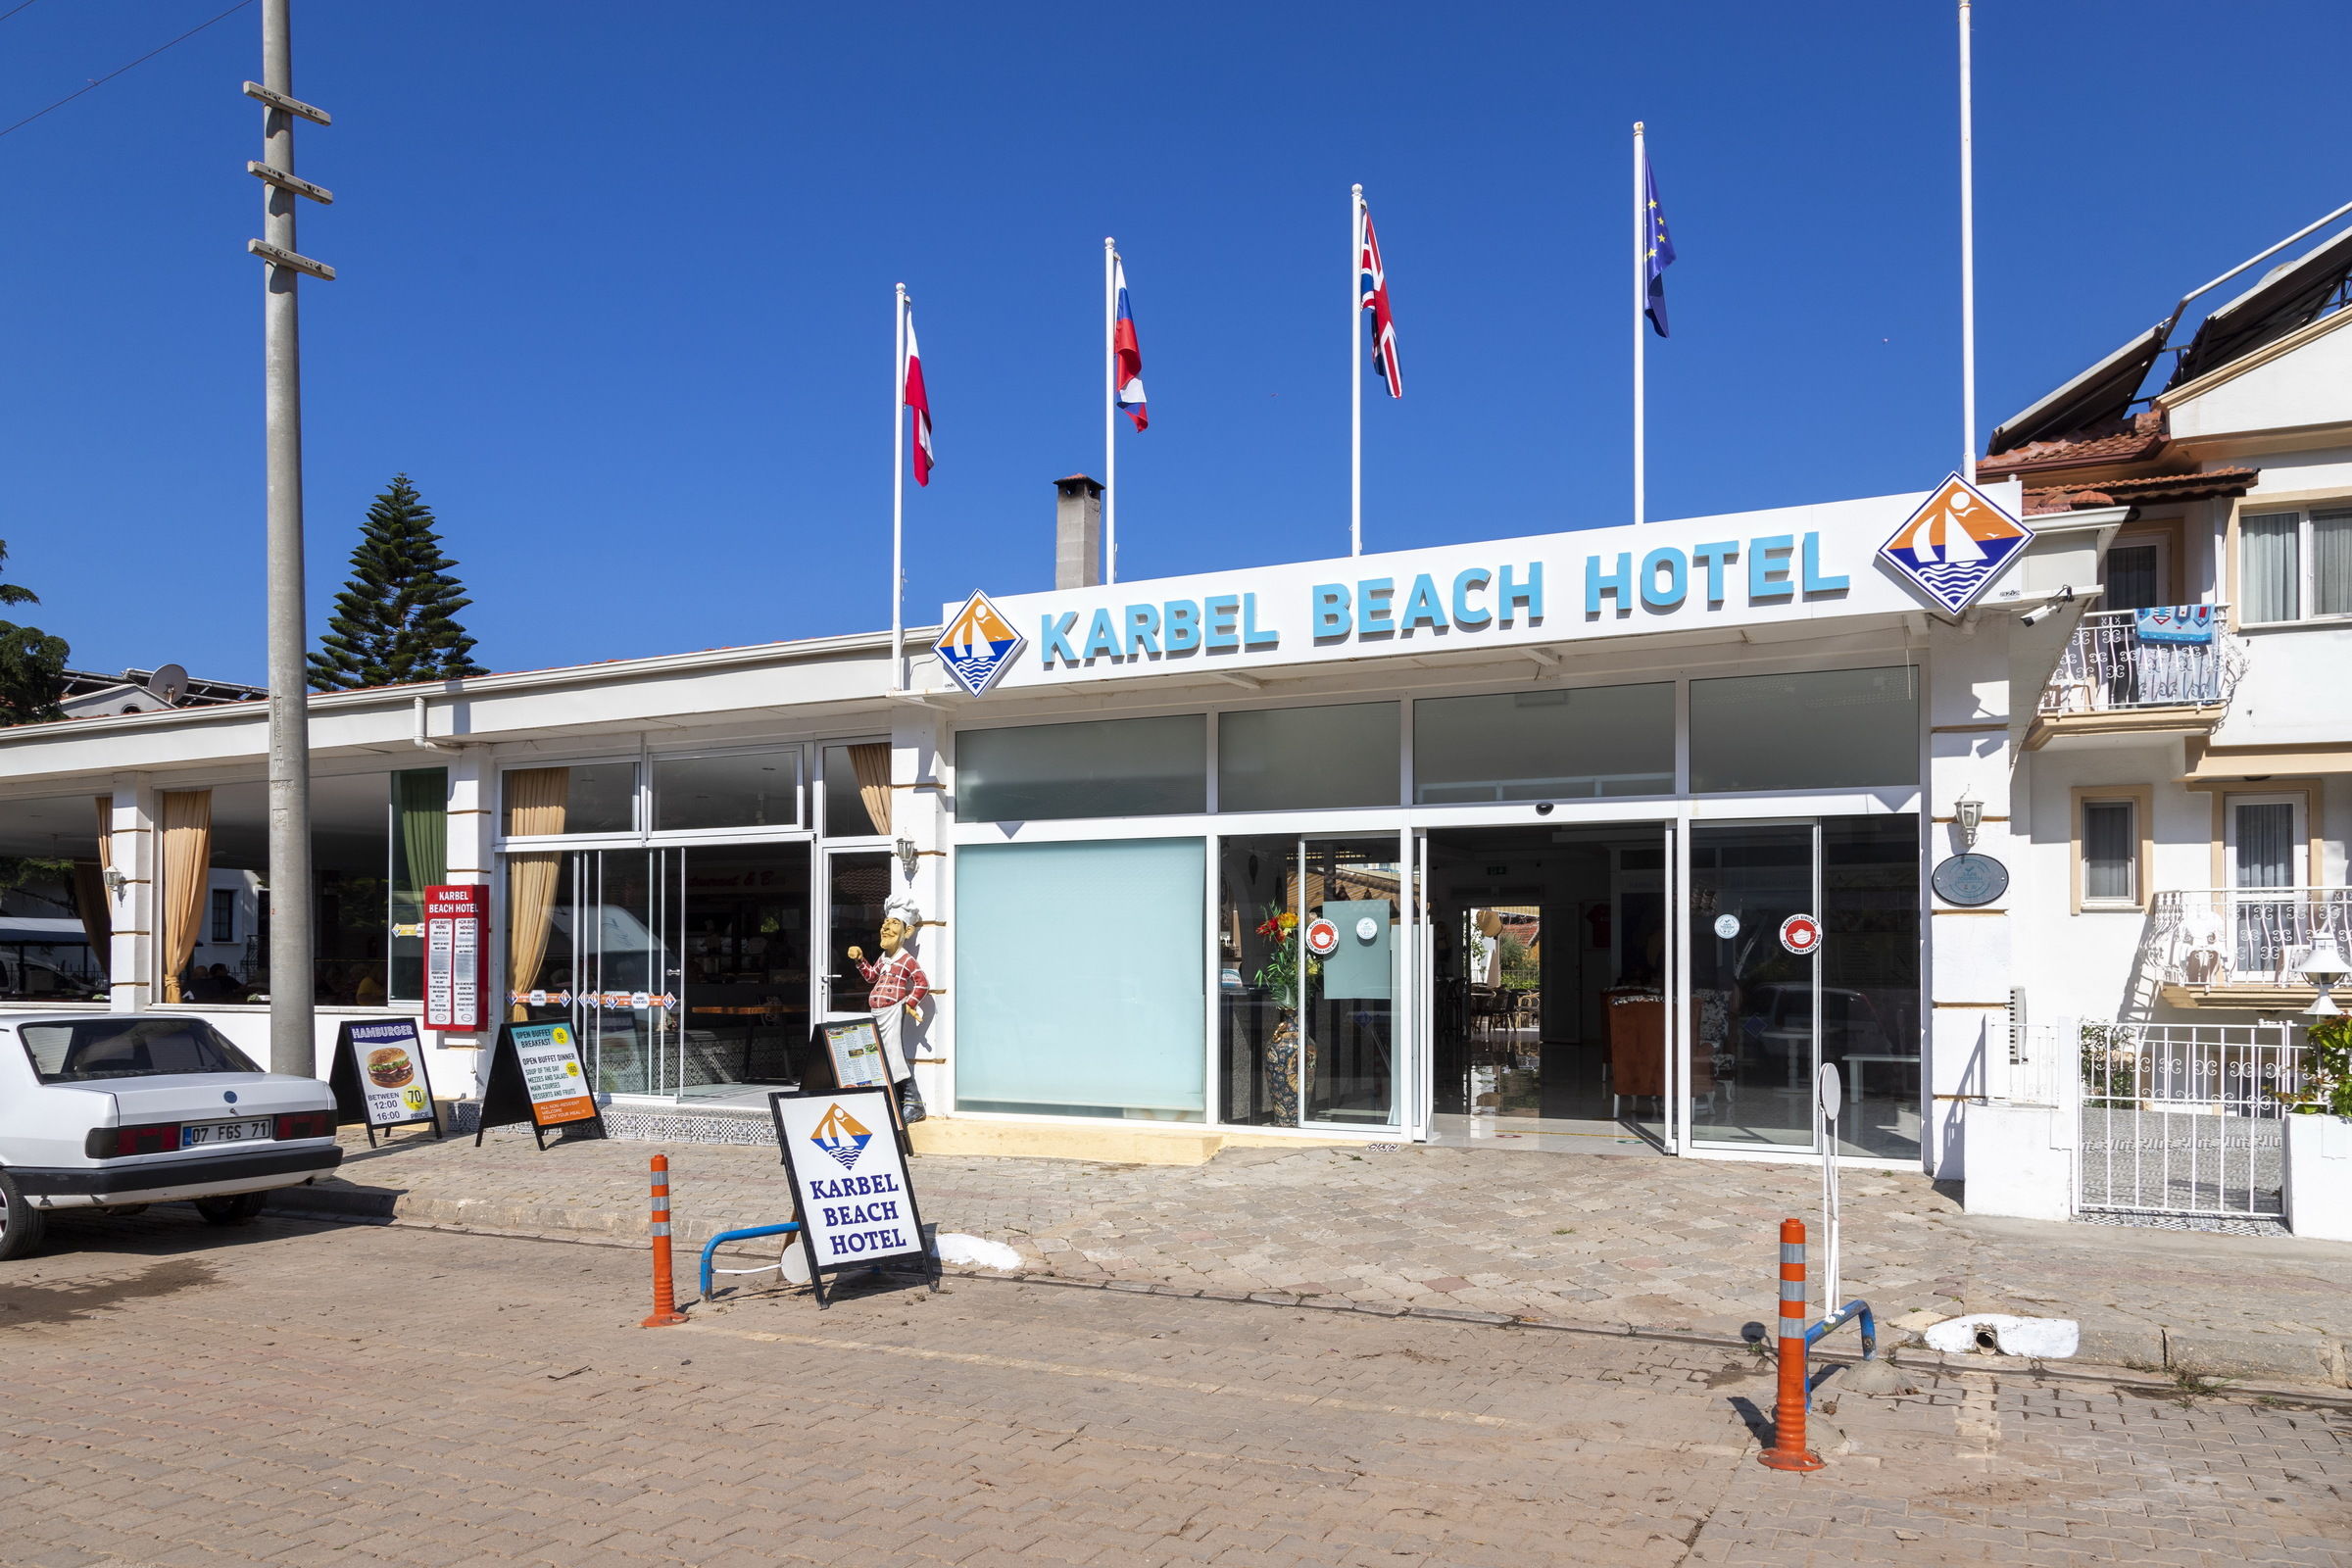 KARBEL BEACH HOTEL